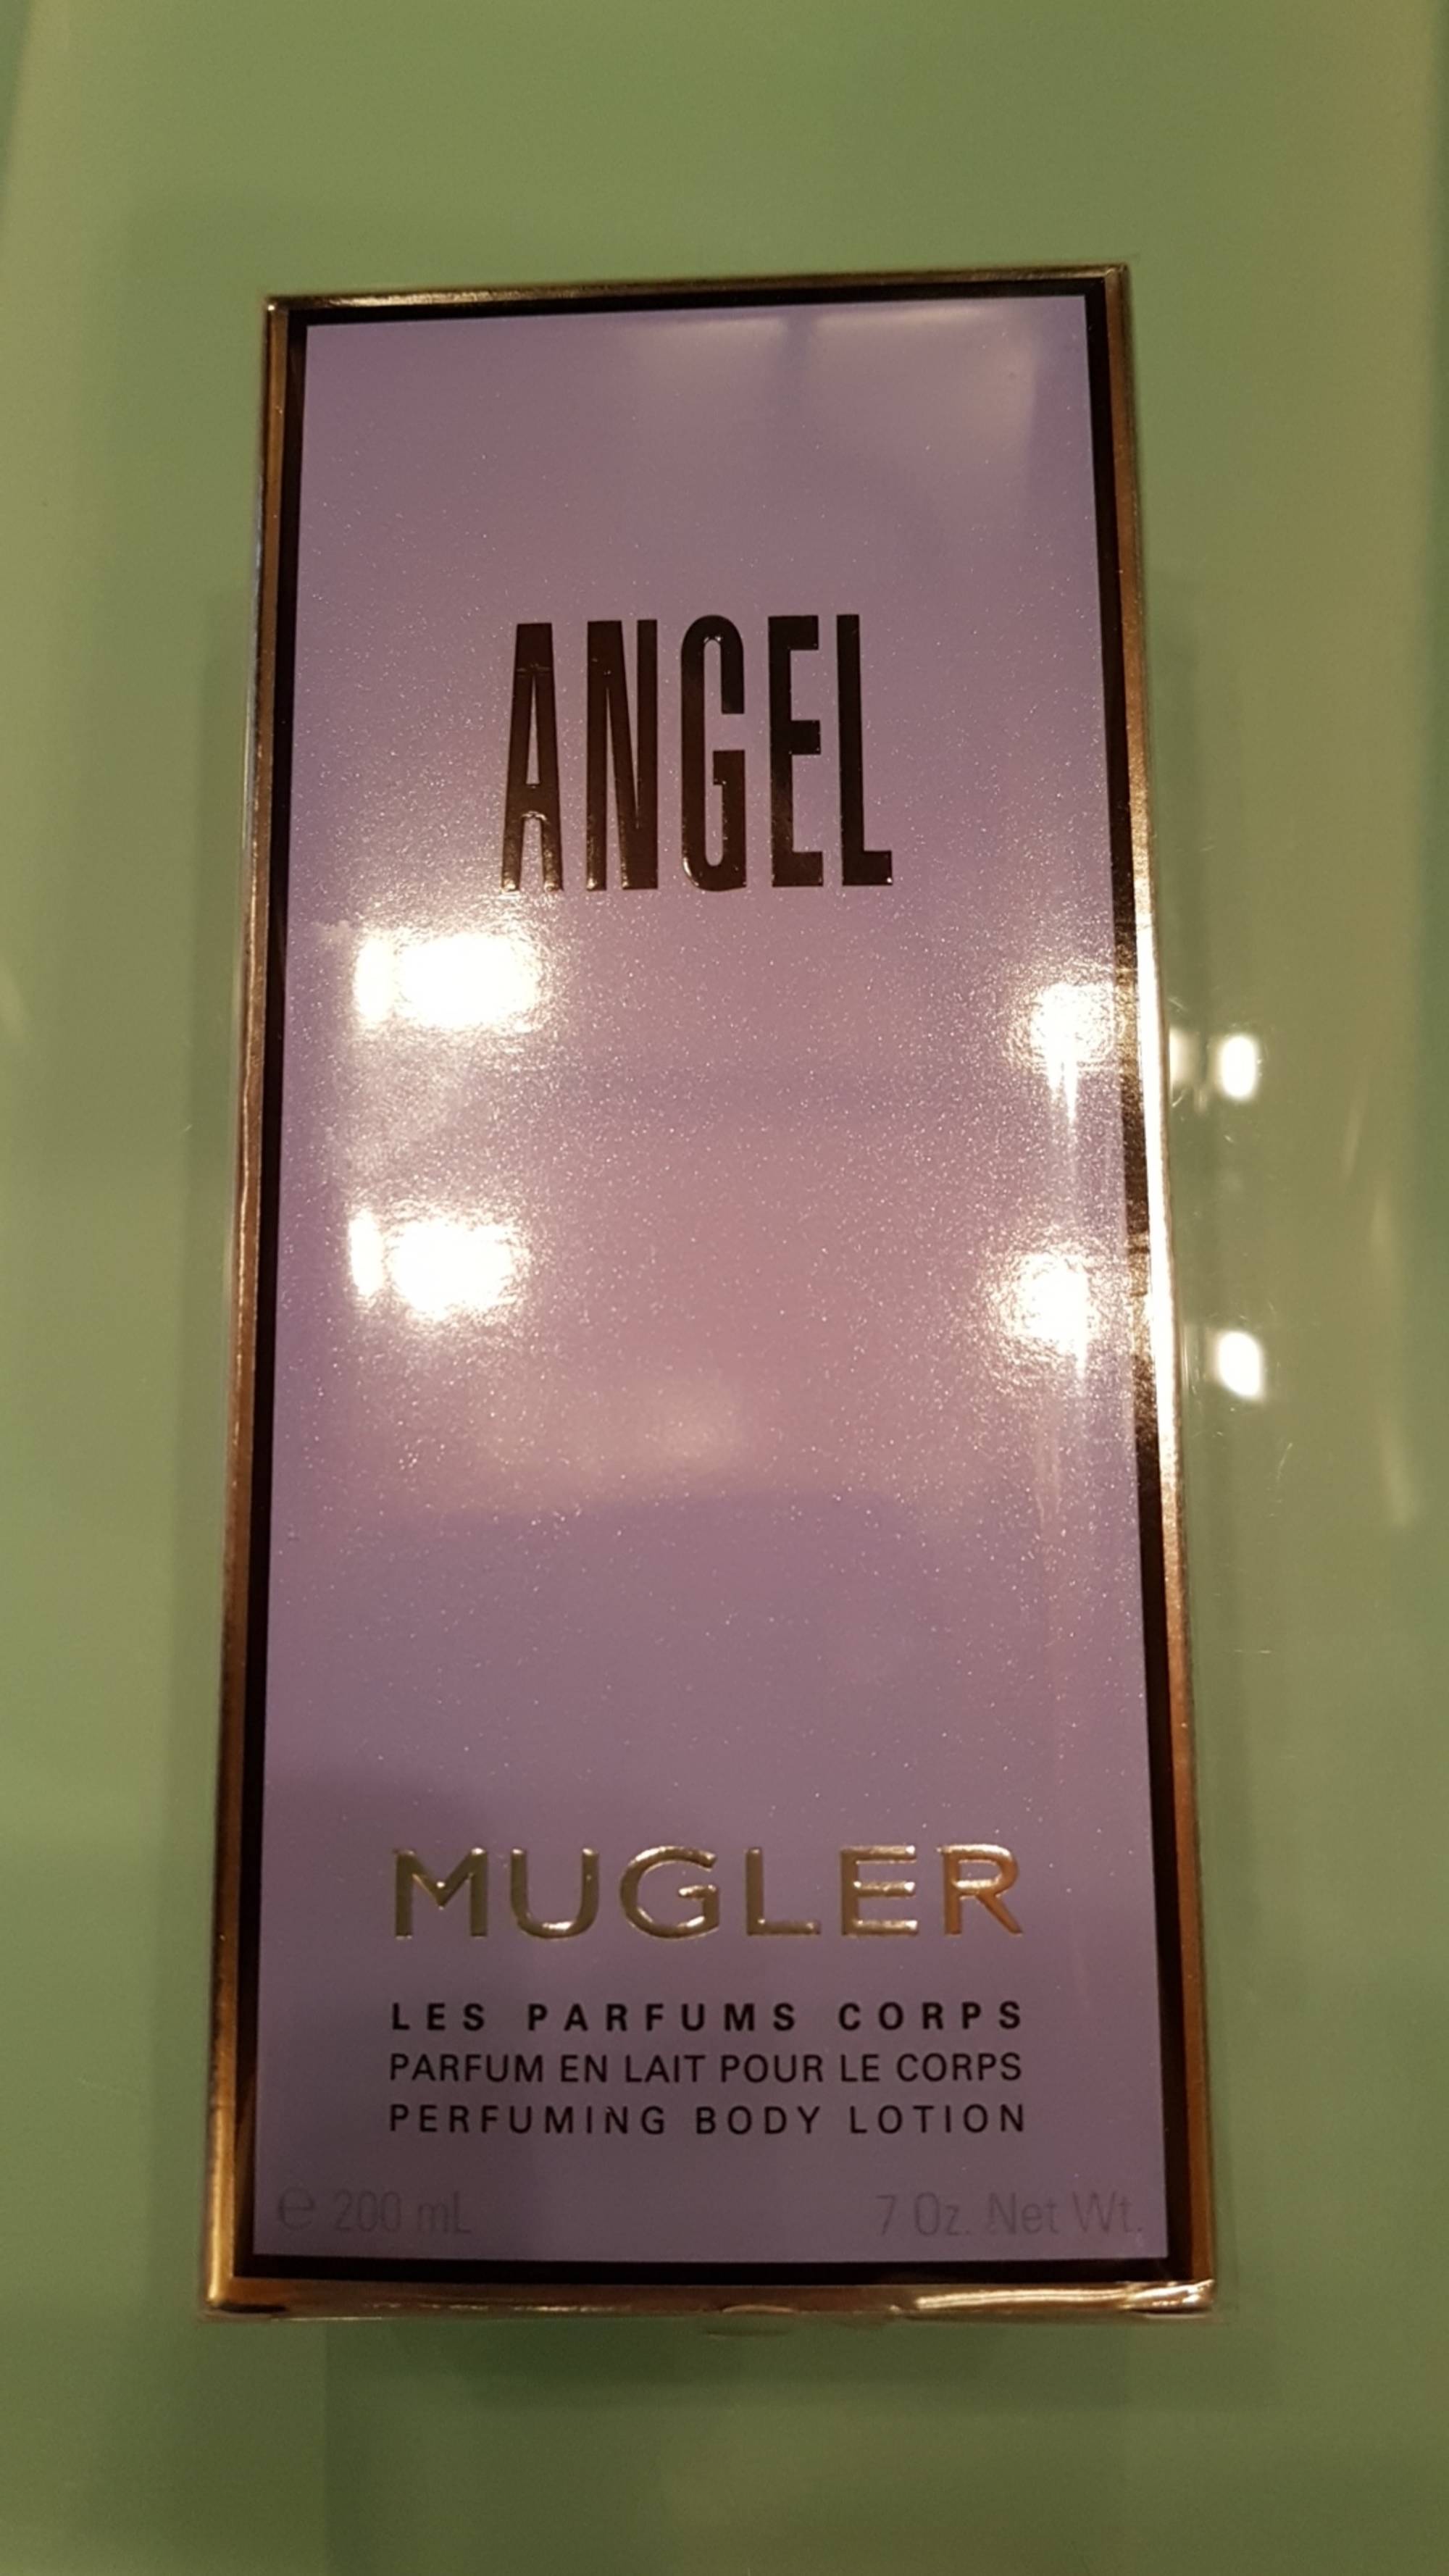 THIERRY MUGLER - Angel - Parfum en lait pour le corps